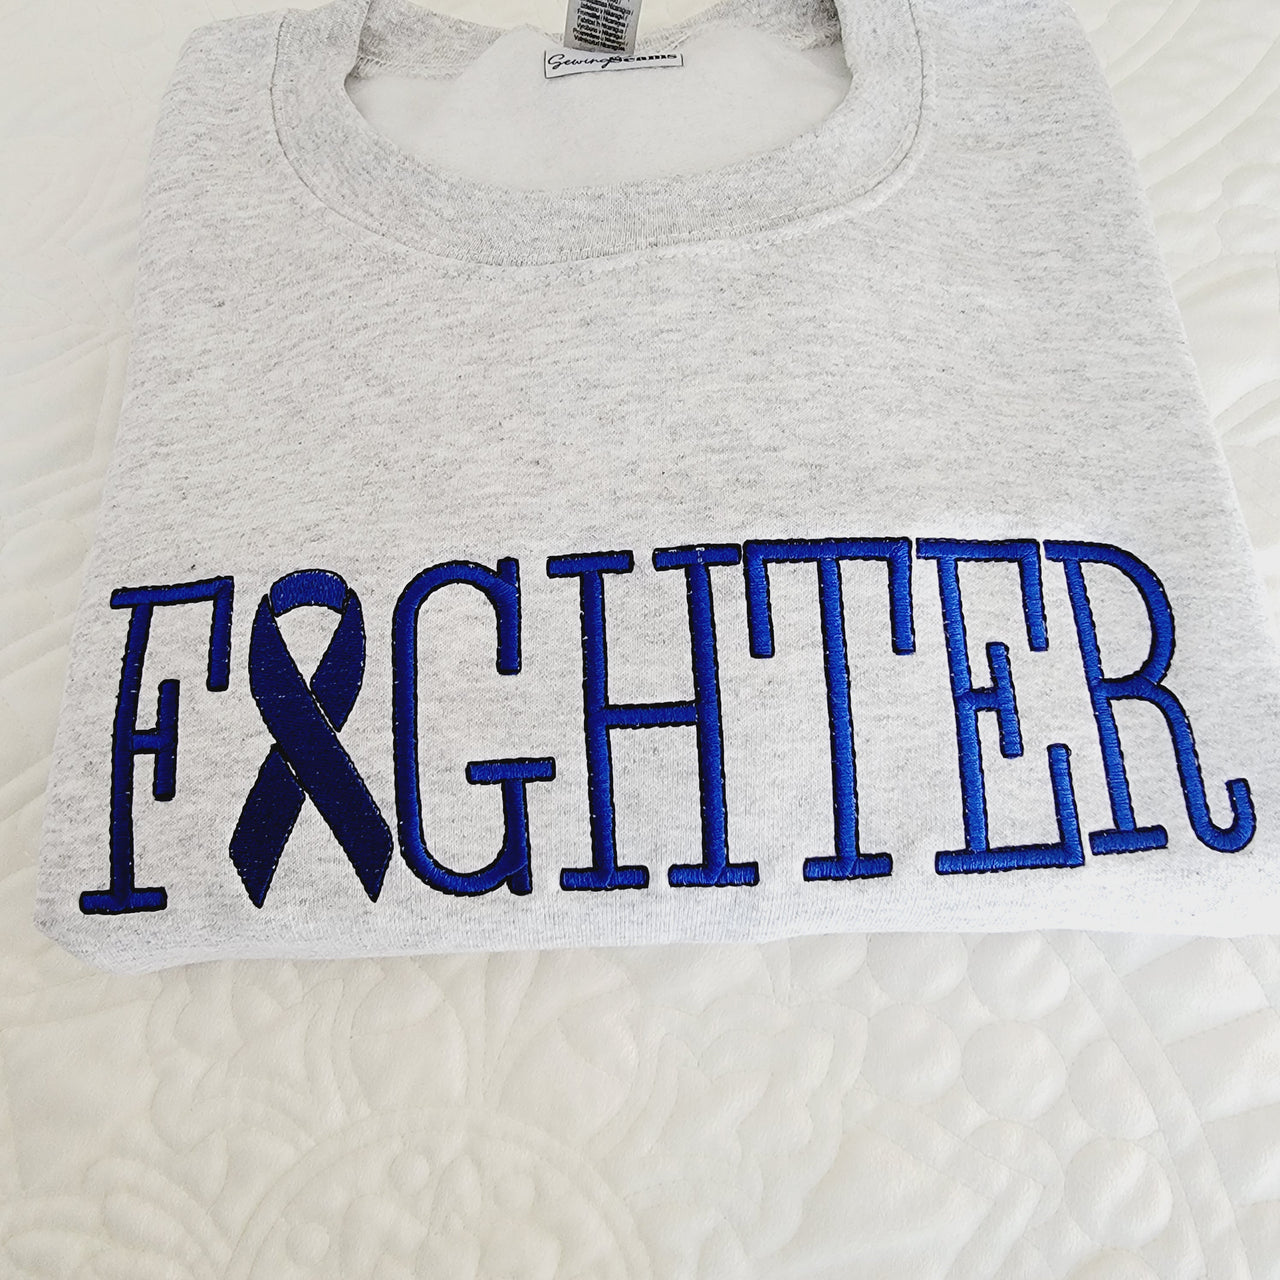 Cancer Fighter Sweatshirt